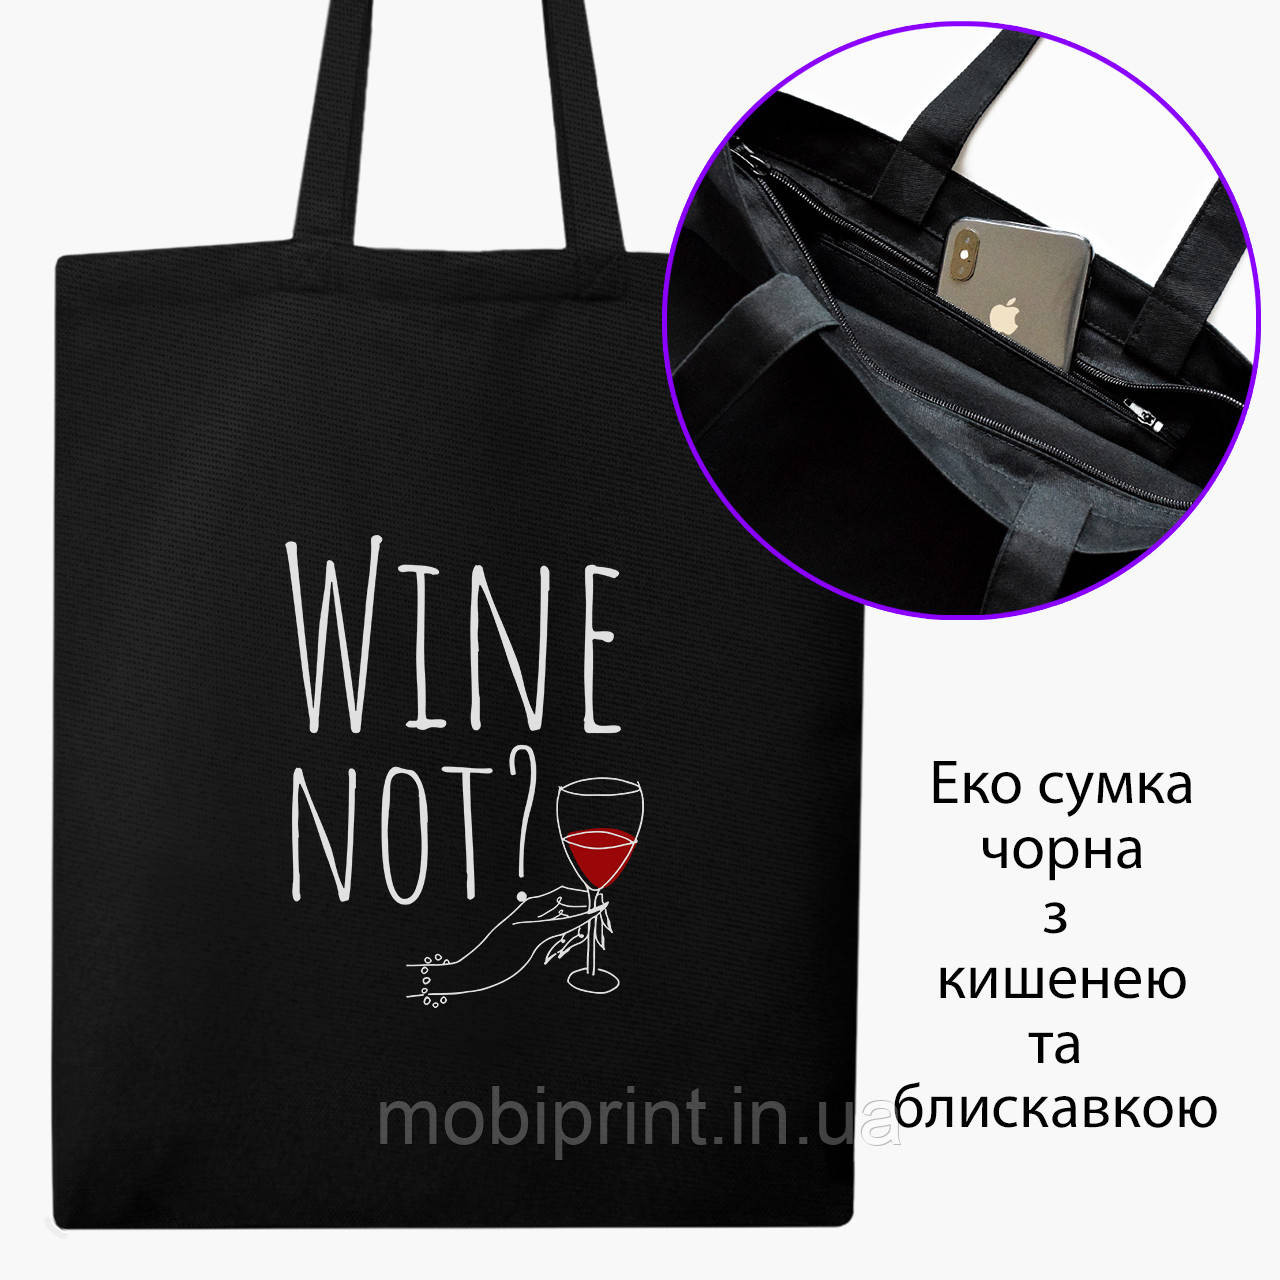 Еко сумка Вино (Wine not?) (9227-2615-BKZ) чорна на блискавці саржа, фото 1